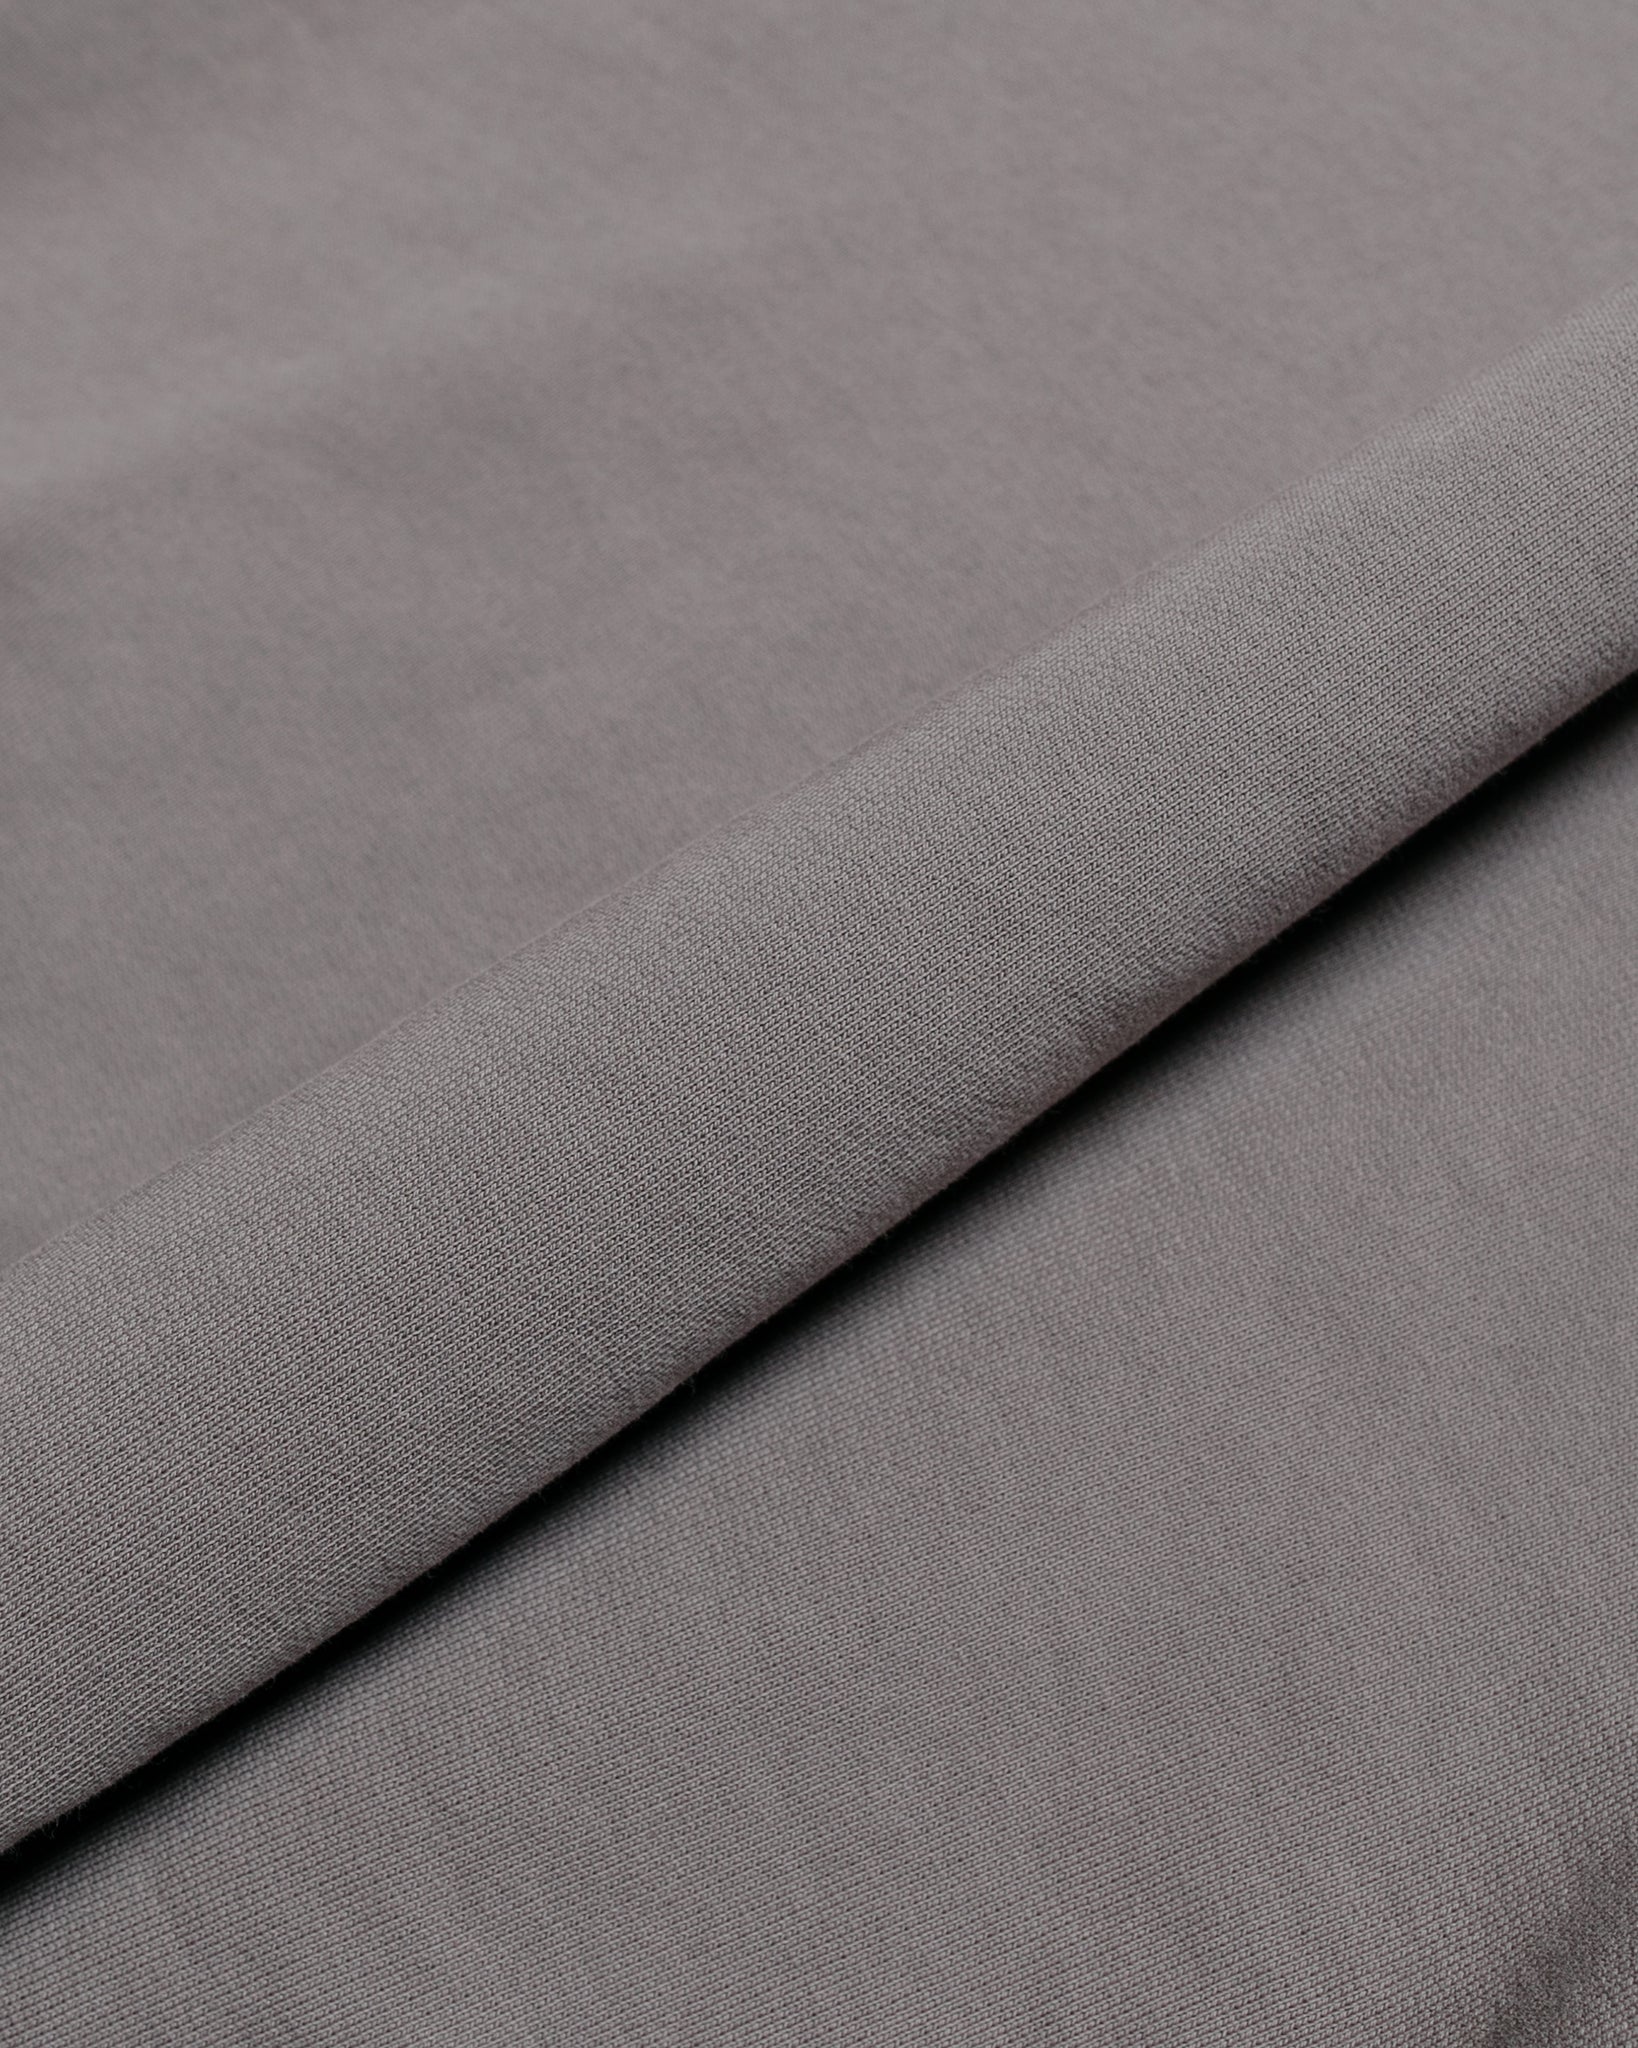 Lady White Co. Varsity Sweatshirt Dust Grey fabric